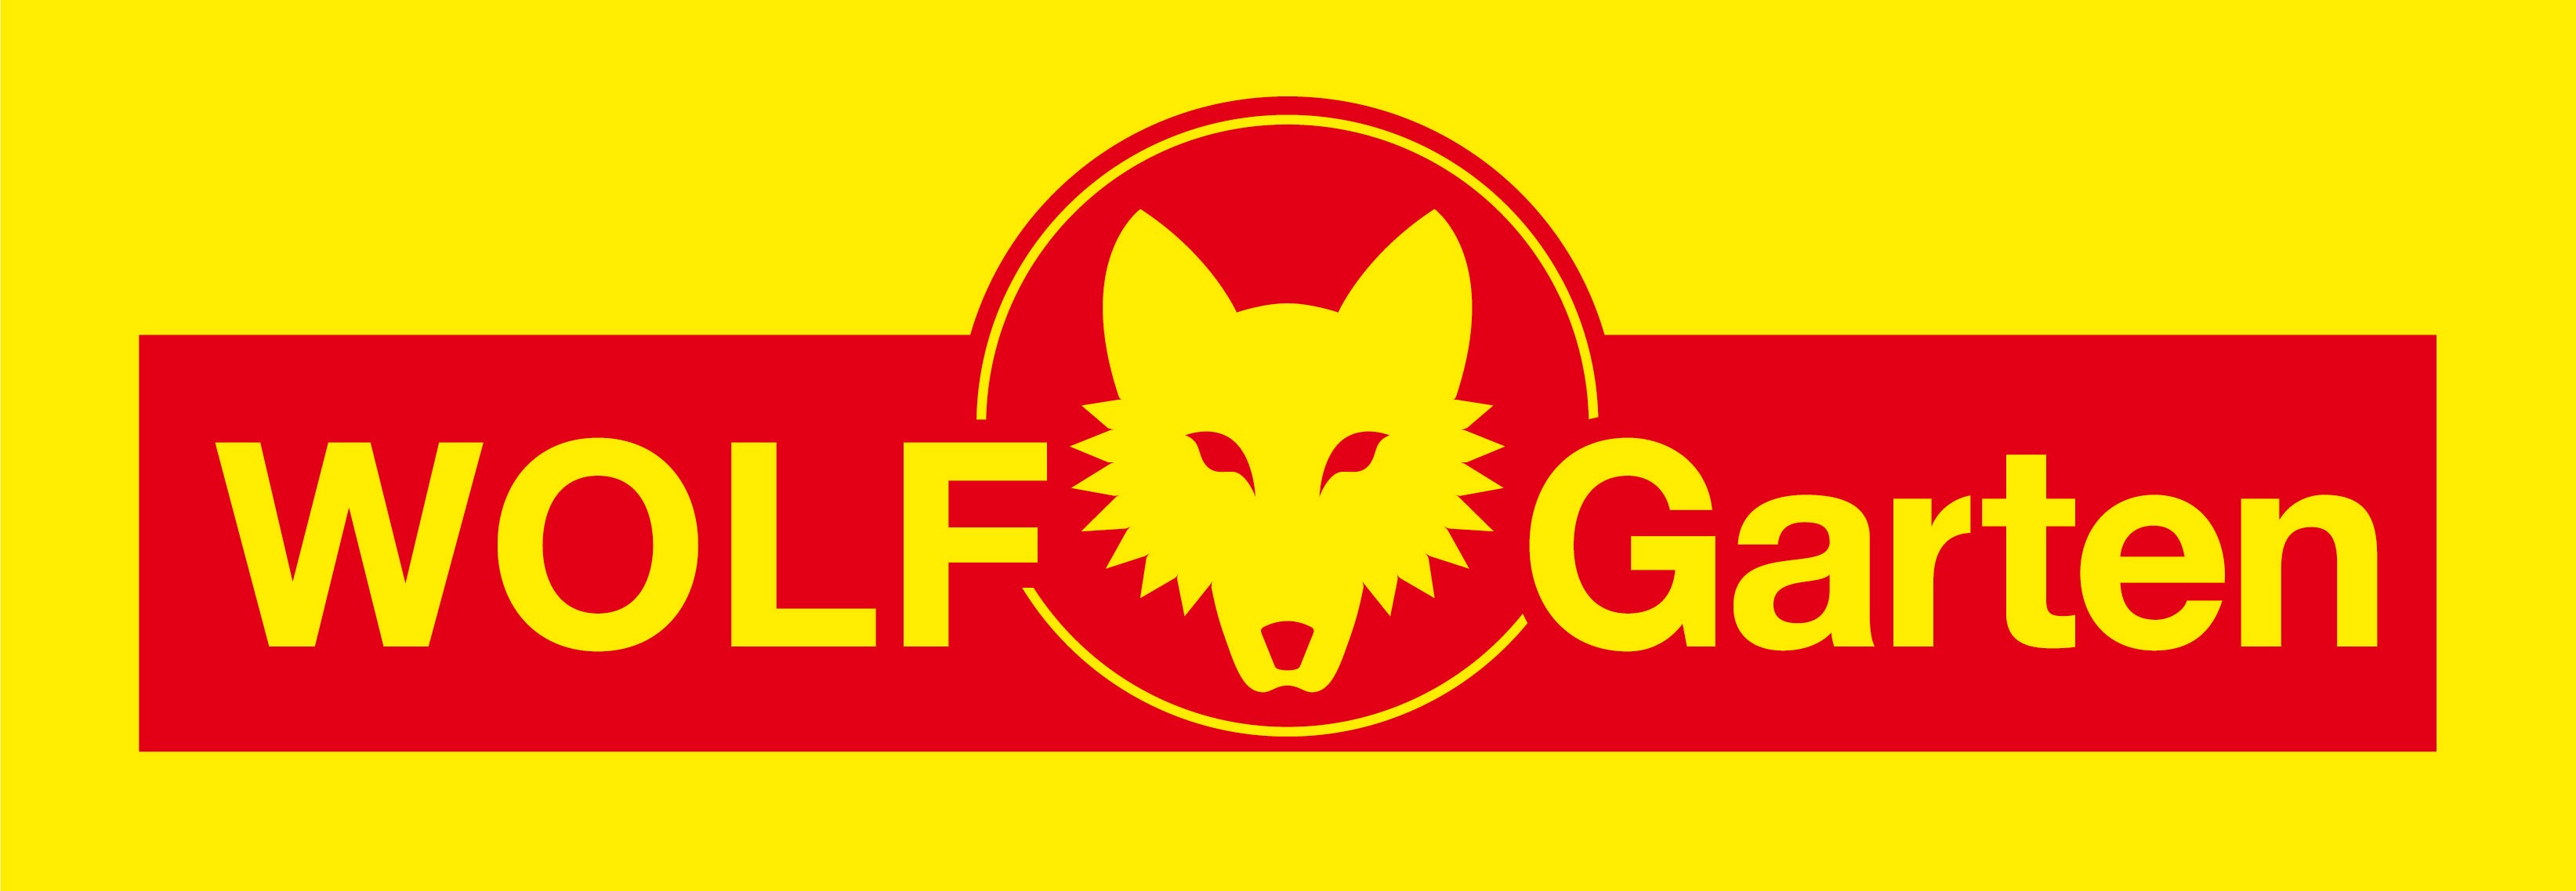 Wolf-Garten логотип бренда